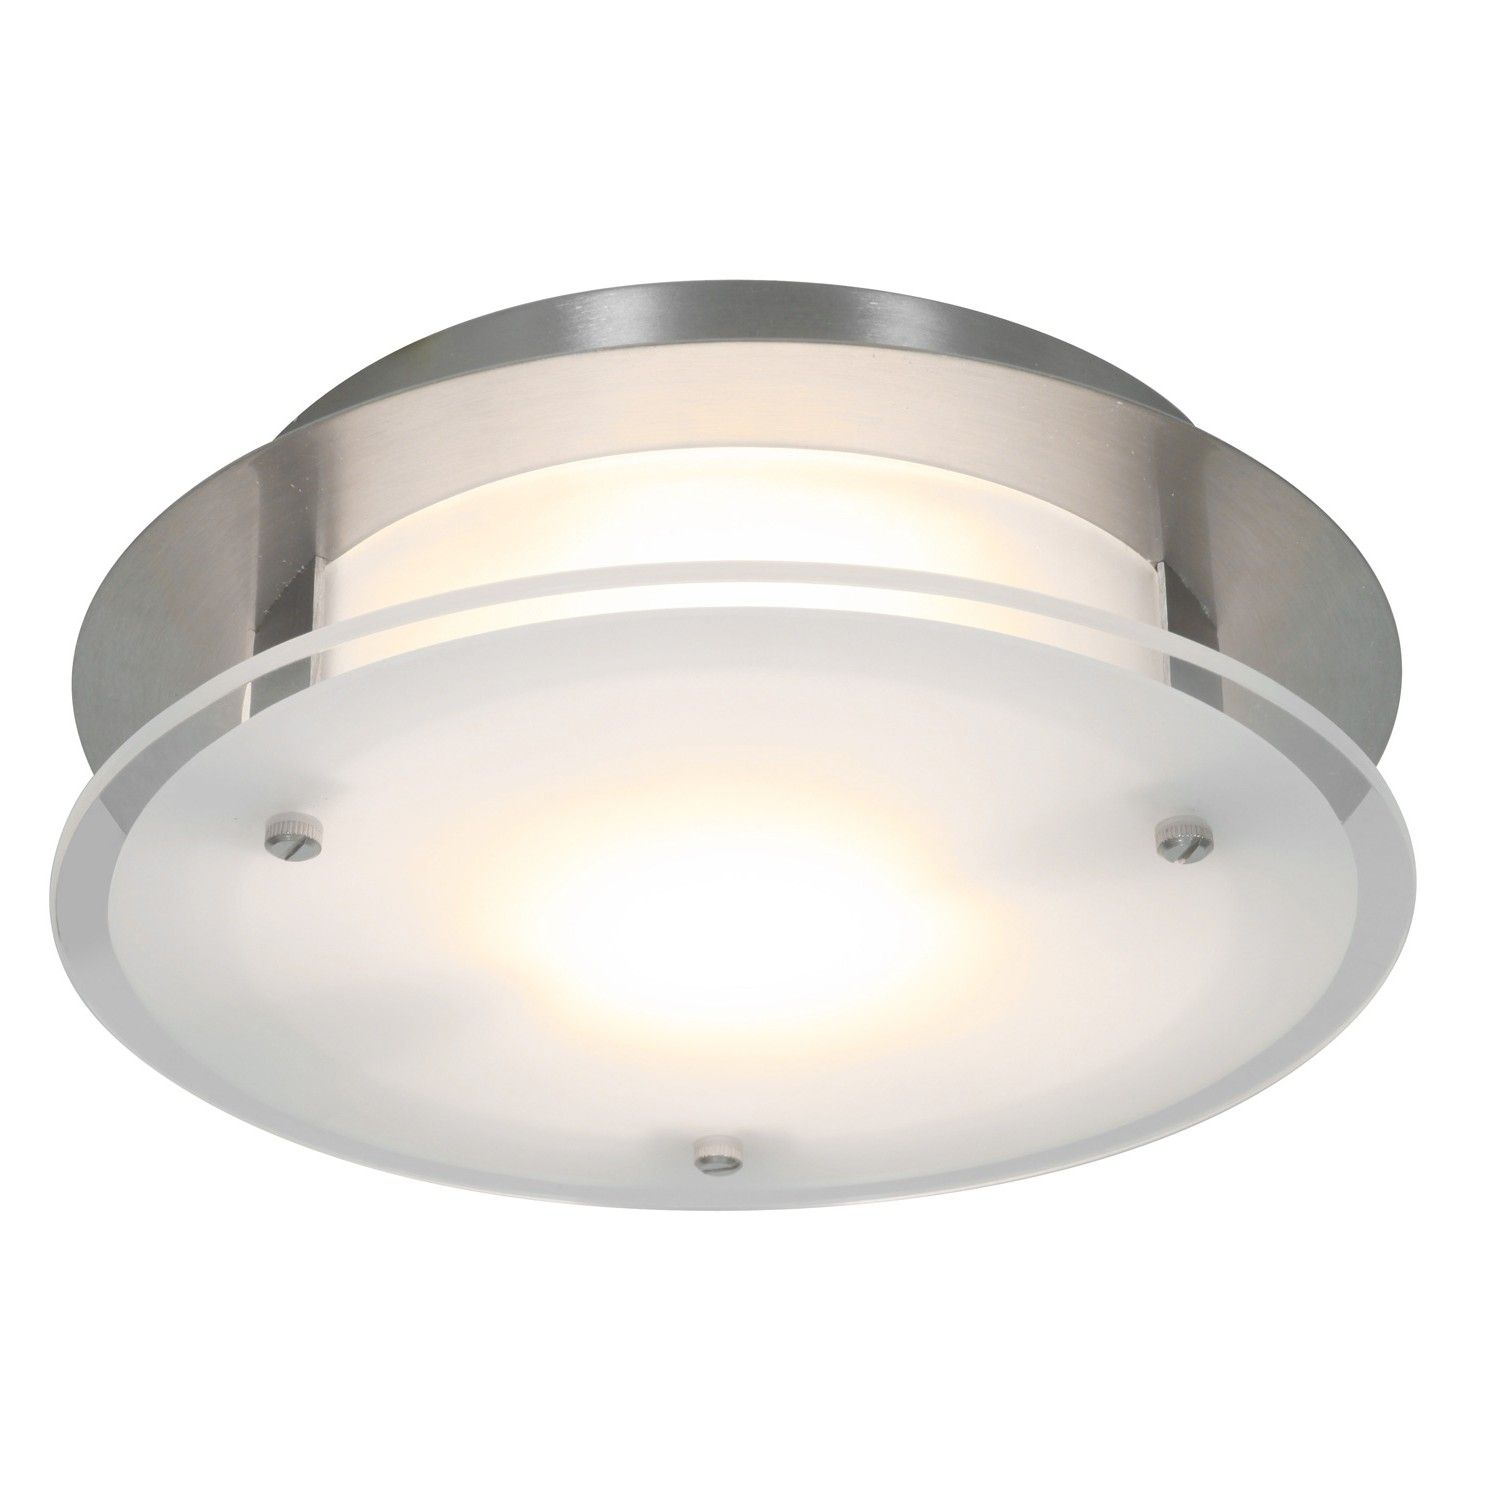 Luxury Ductless Bathroom Fan With Light Bathroom Fan Light regarding size 1500 X 1500